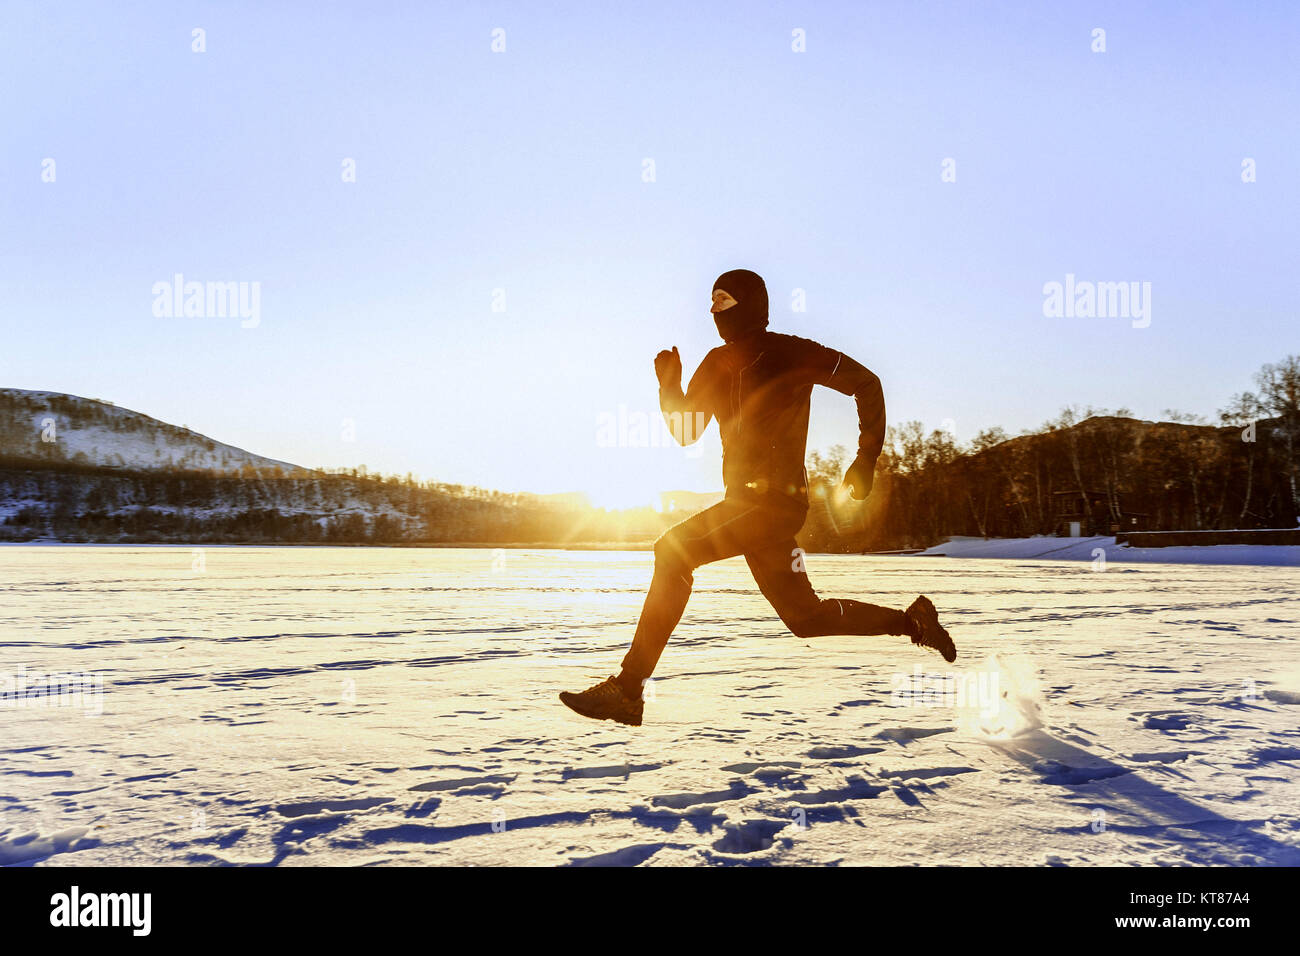 morning winter running athlete runner in rays of sunrise Stock Photo